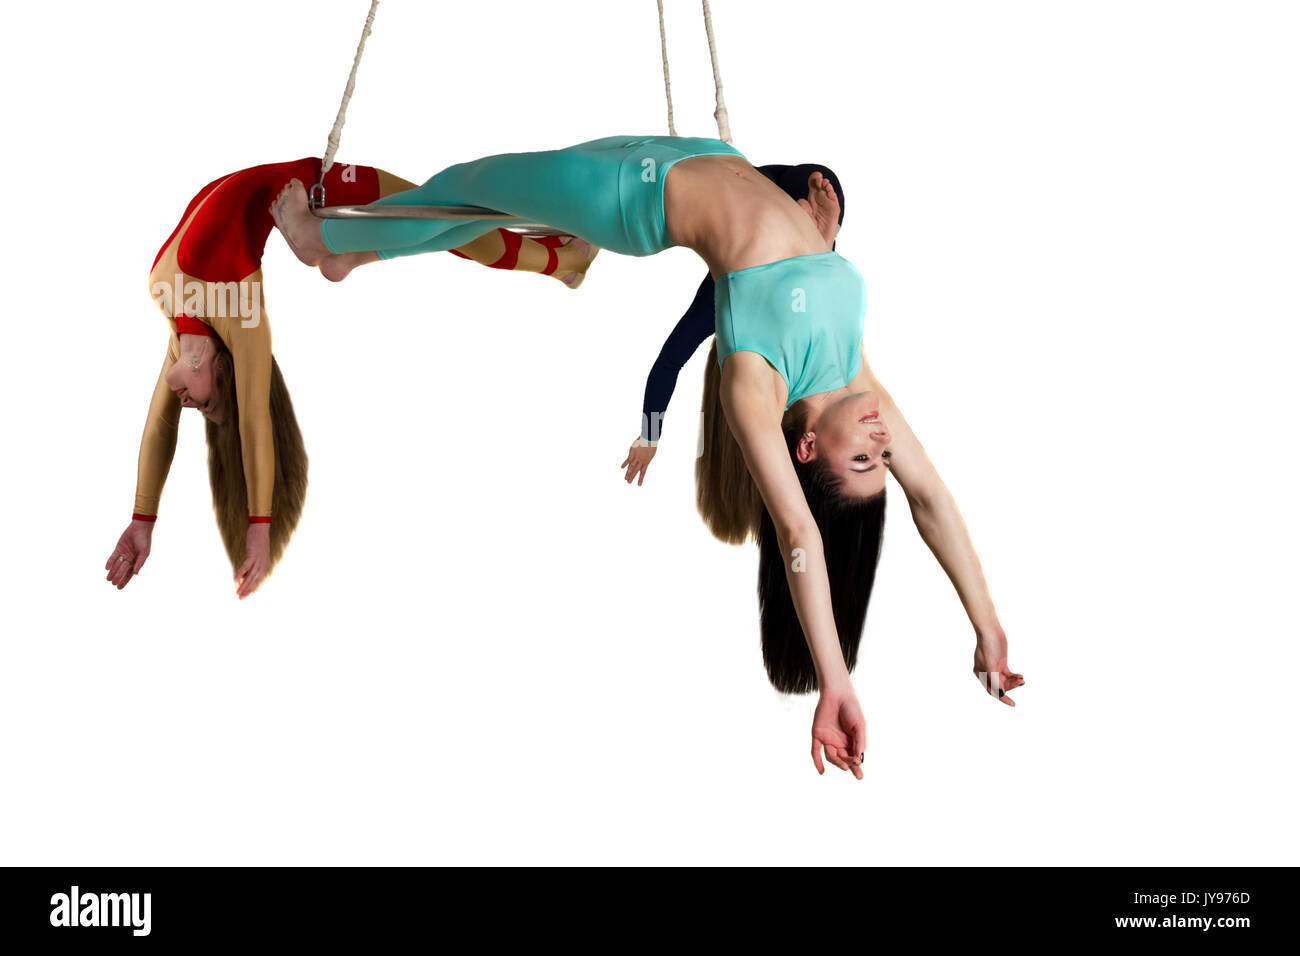 Die junge Frau Trio tun som akrobatische Tricks auf Antenne Glanz Stockfoto